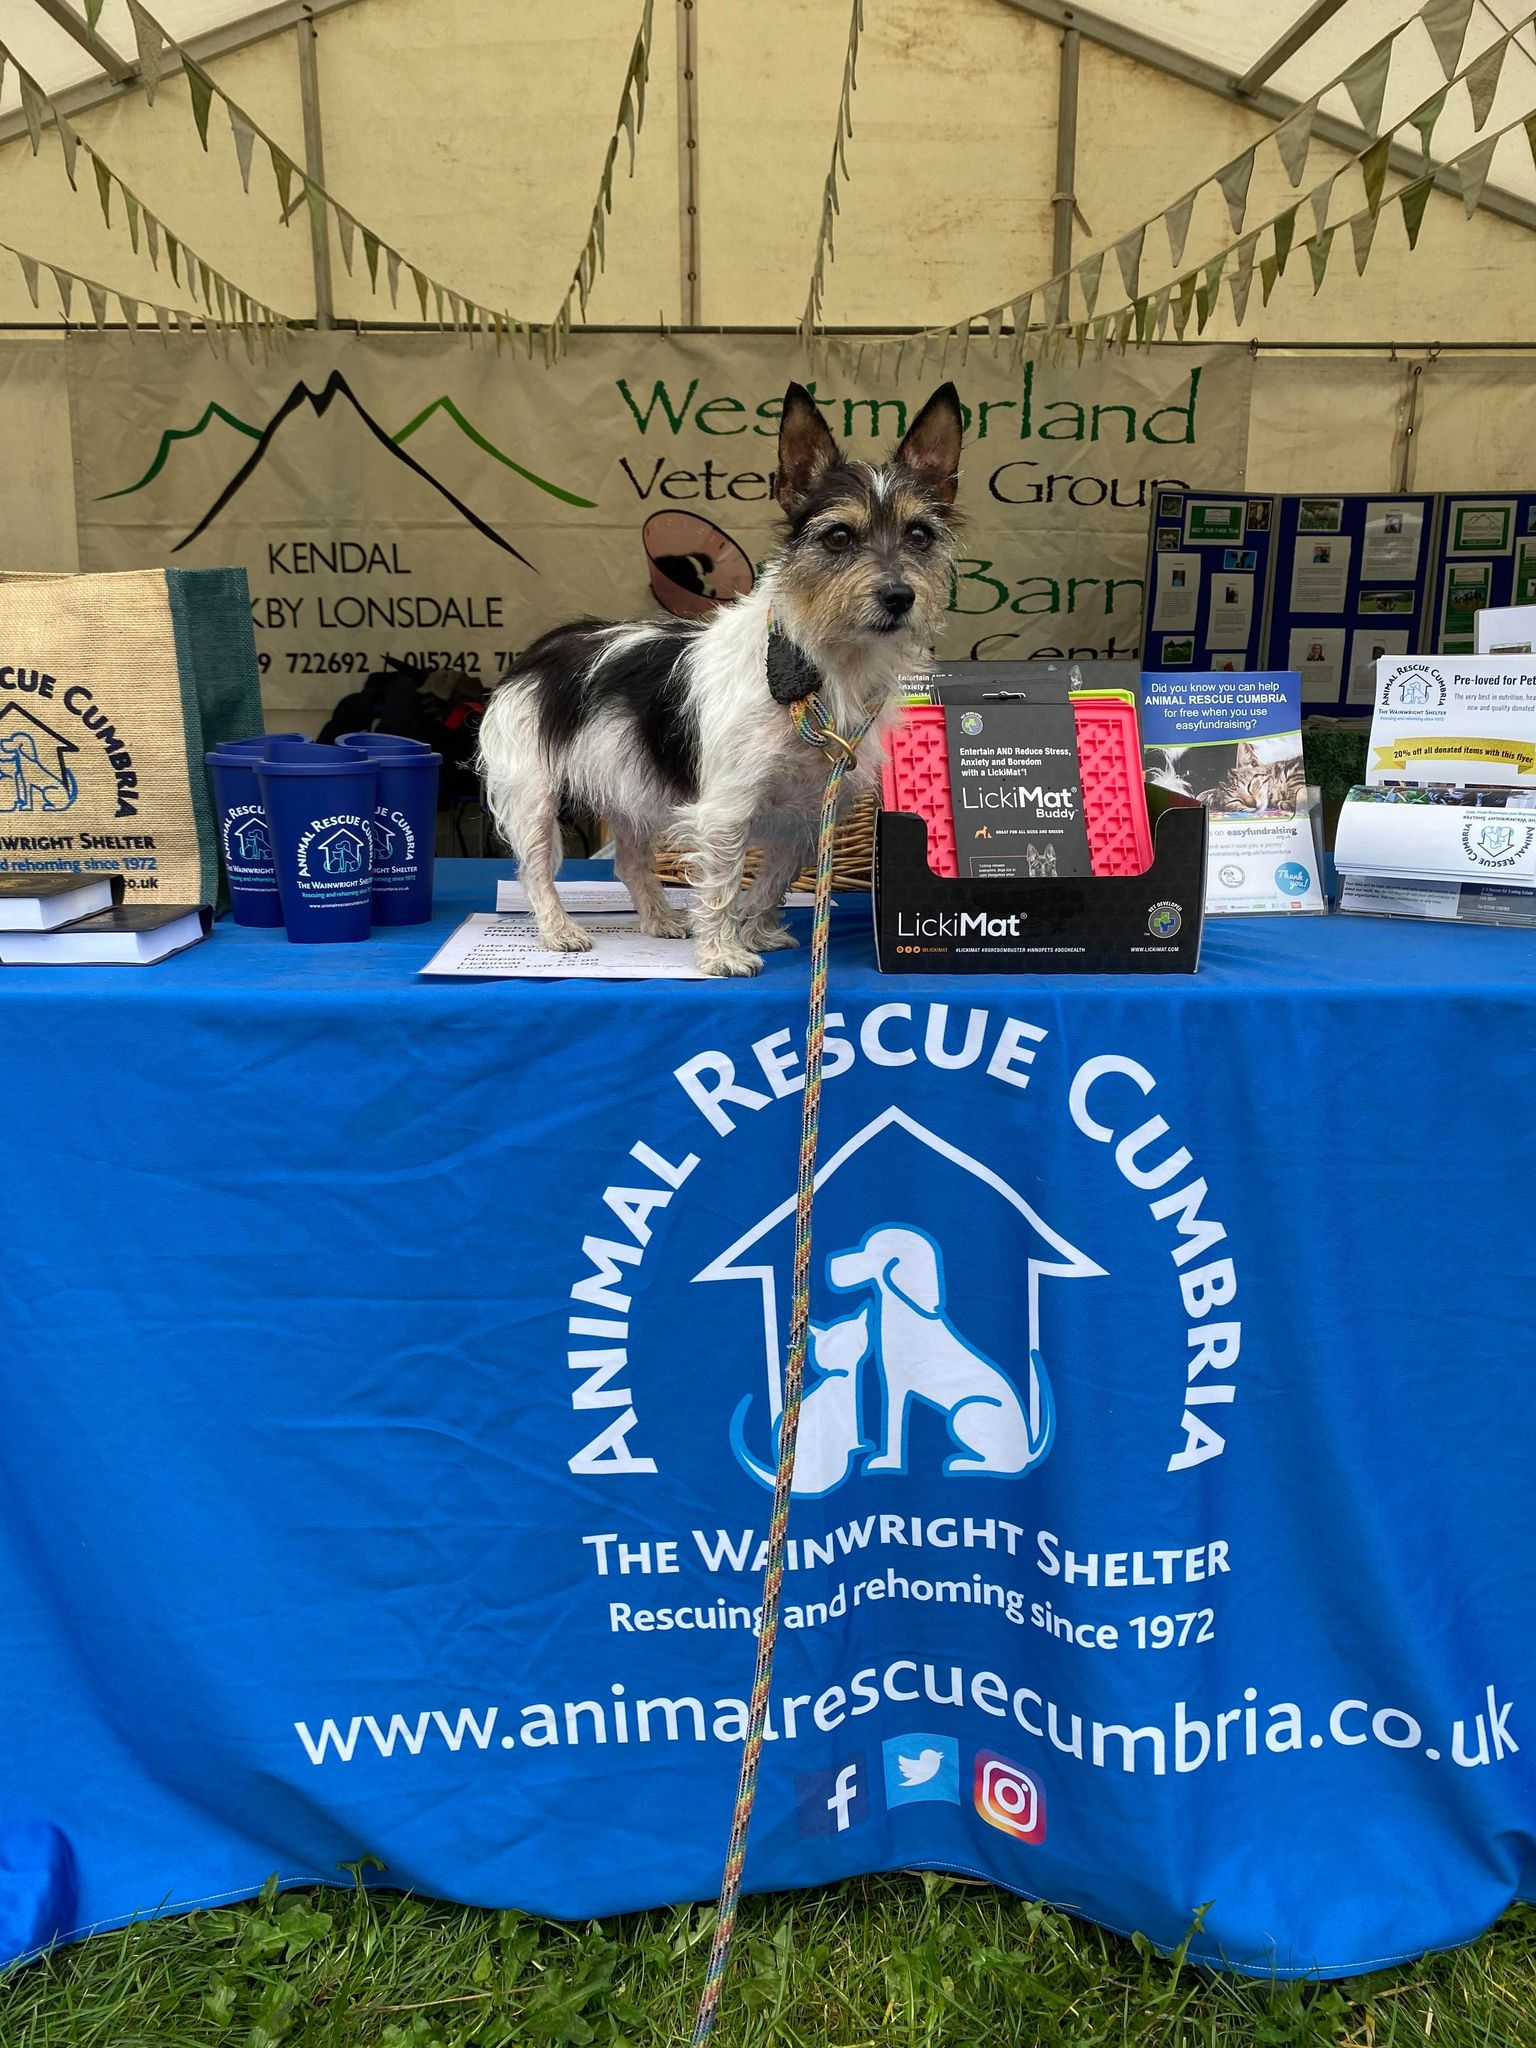 Elissa Proctor is fundraising for Animal Rescue Cumbria